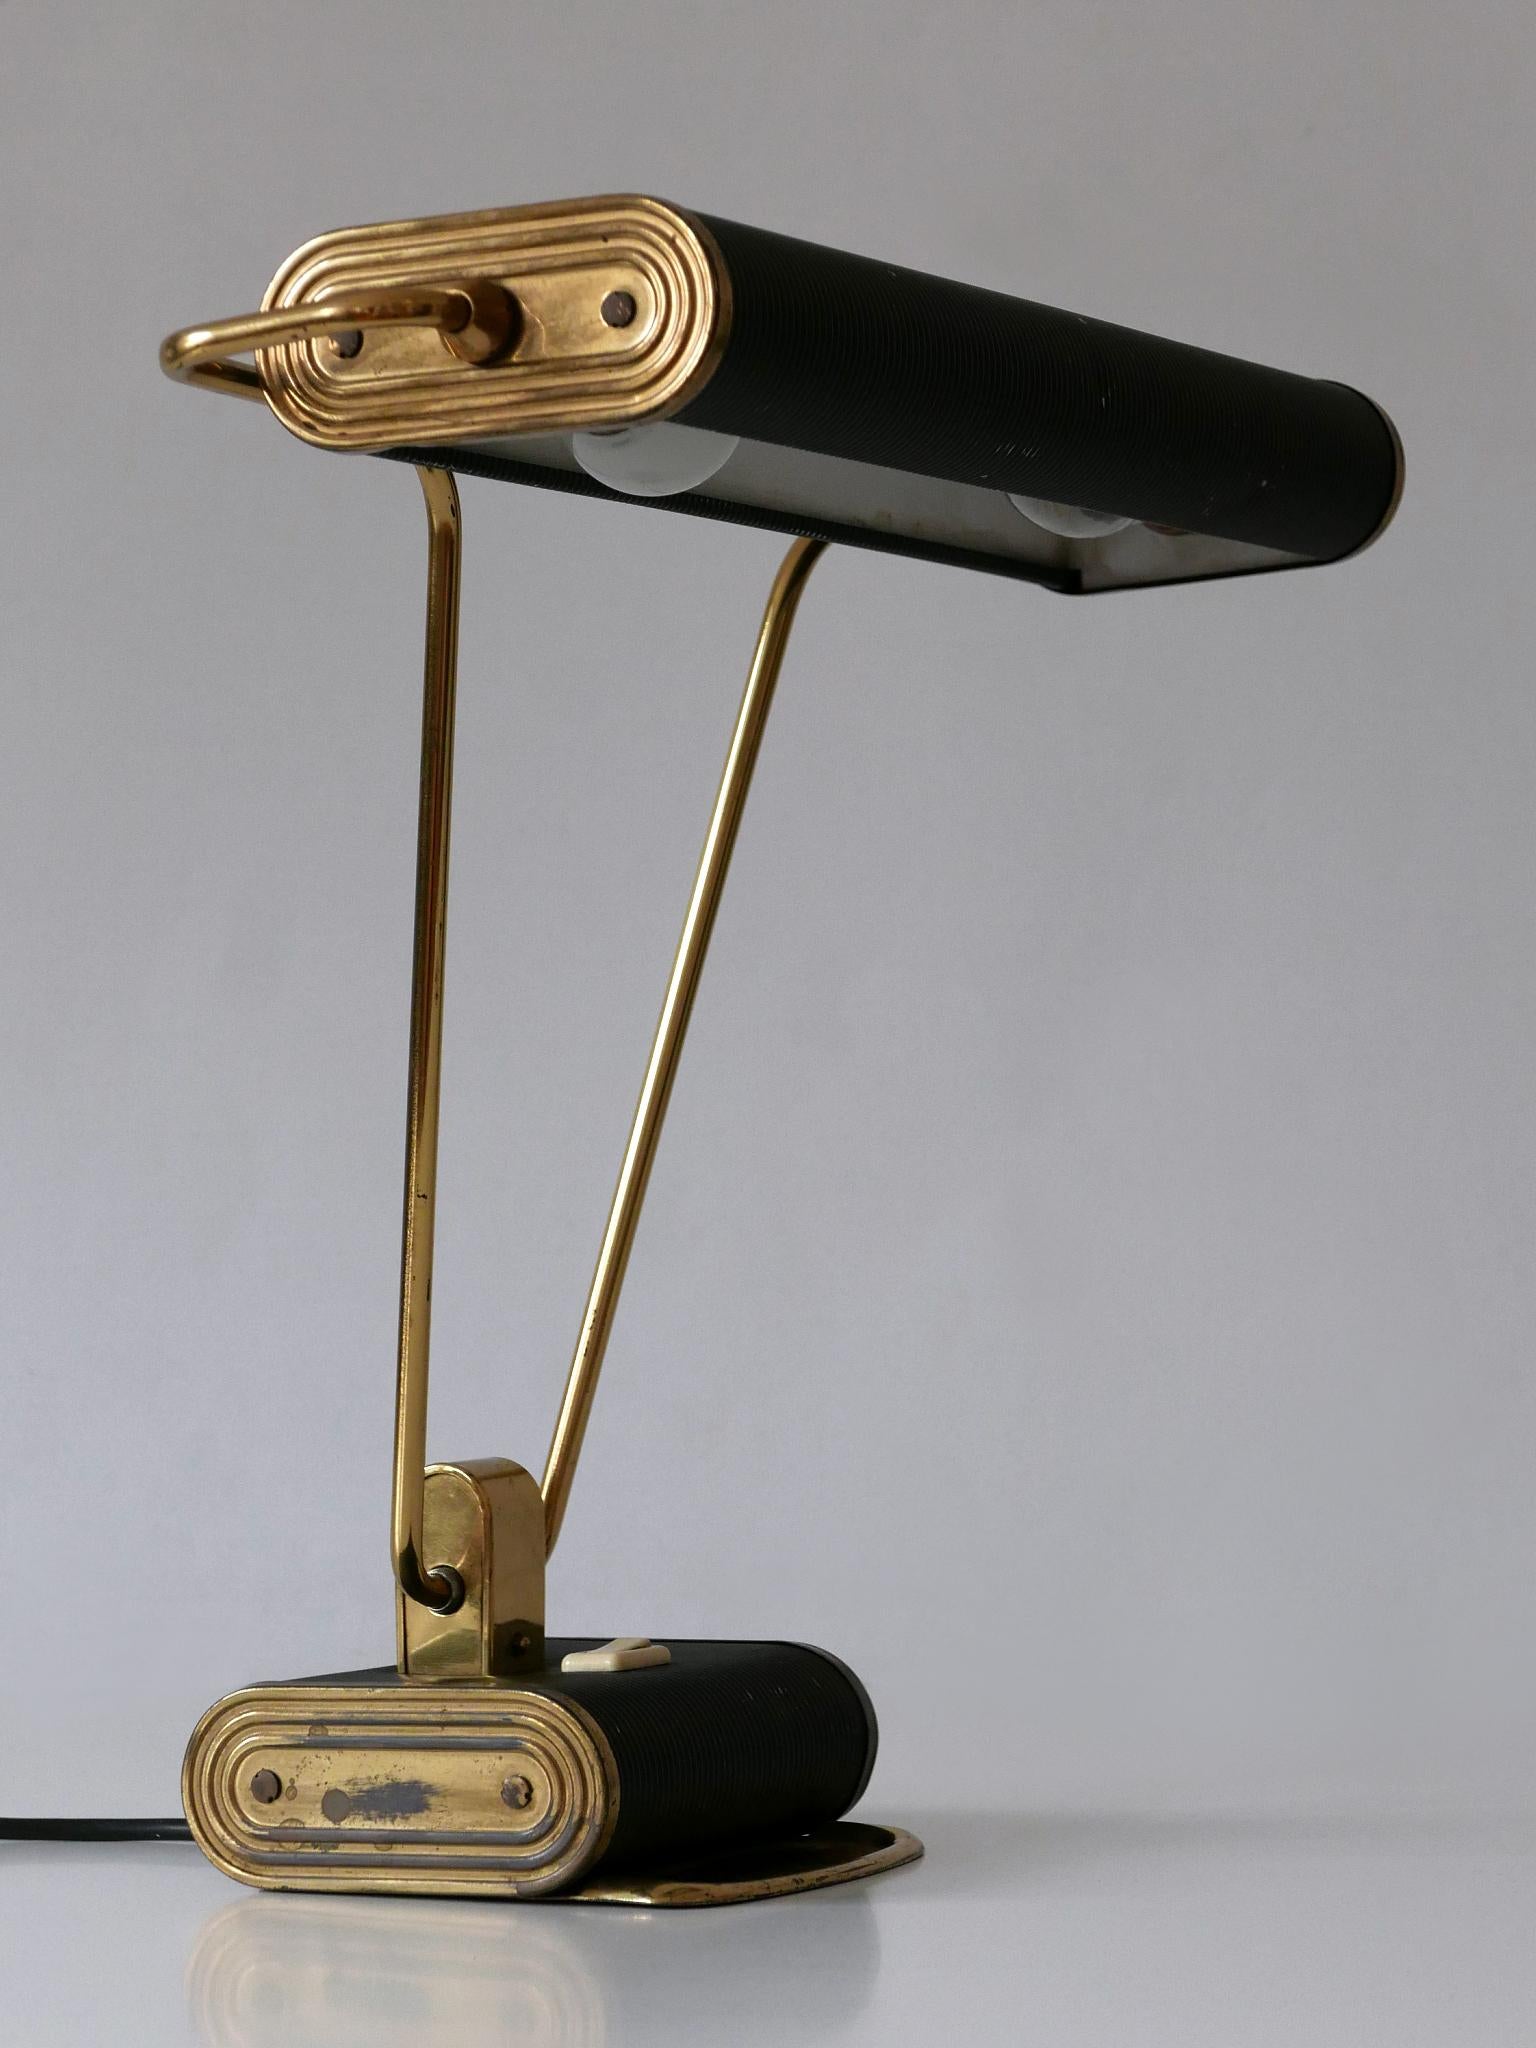 Elégante lampe de table ou de bureau Art Deco n° 71. Abat-jour rotatif. Conçu par André Mounique pour Jumo, France, années 1930.

Un total de 5 lampes en deux couleurs est disponible !
Il s'agit du numéro 1 des cinq lampes de bureau. Les images sont